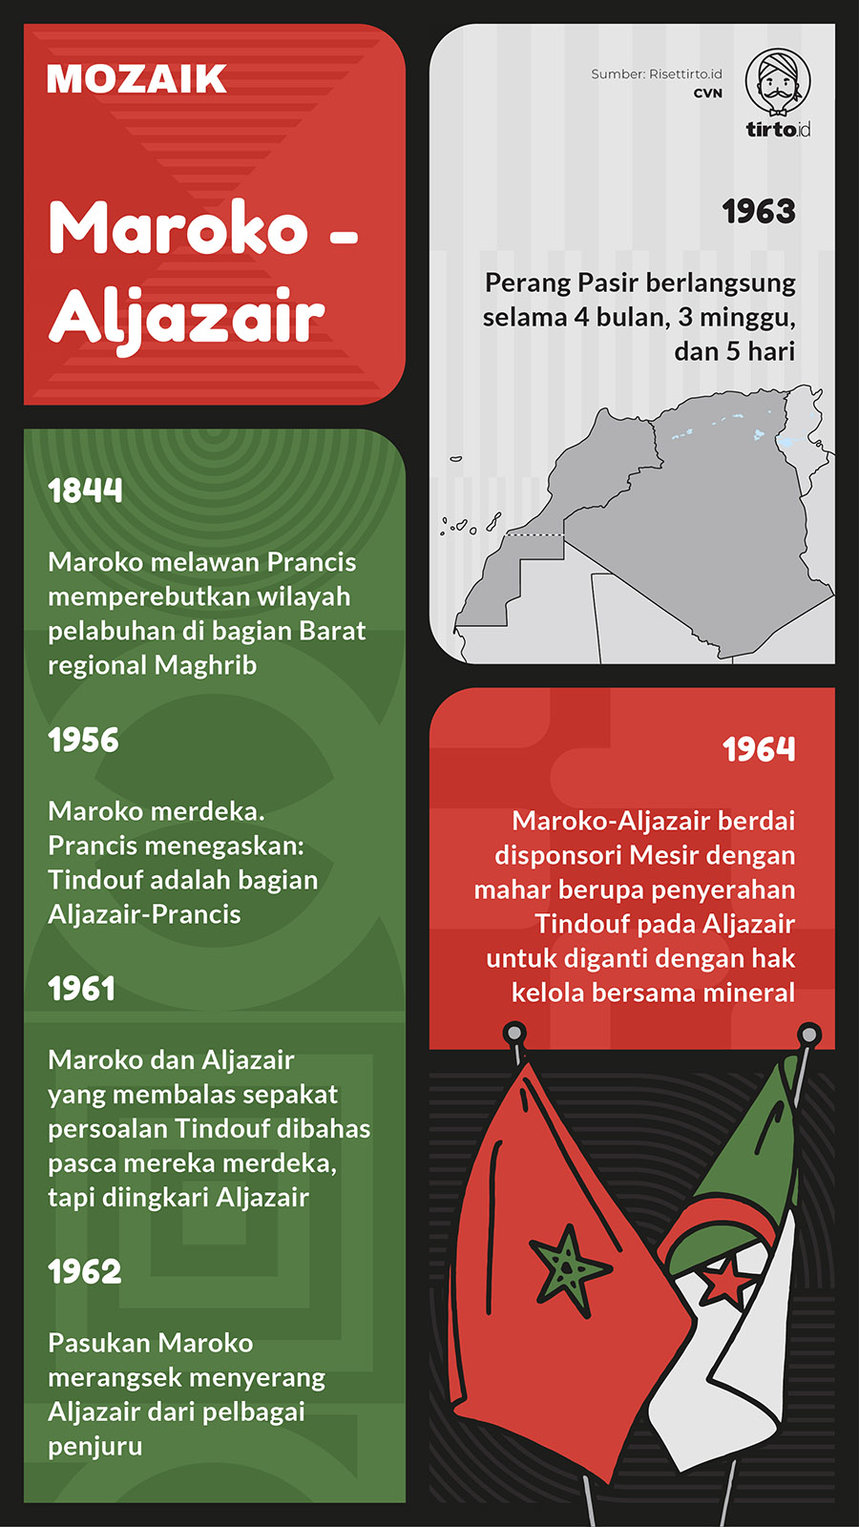 Infografik Mozaik Maroko